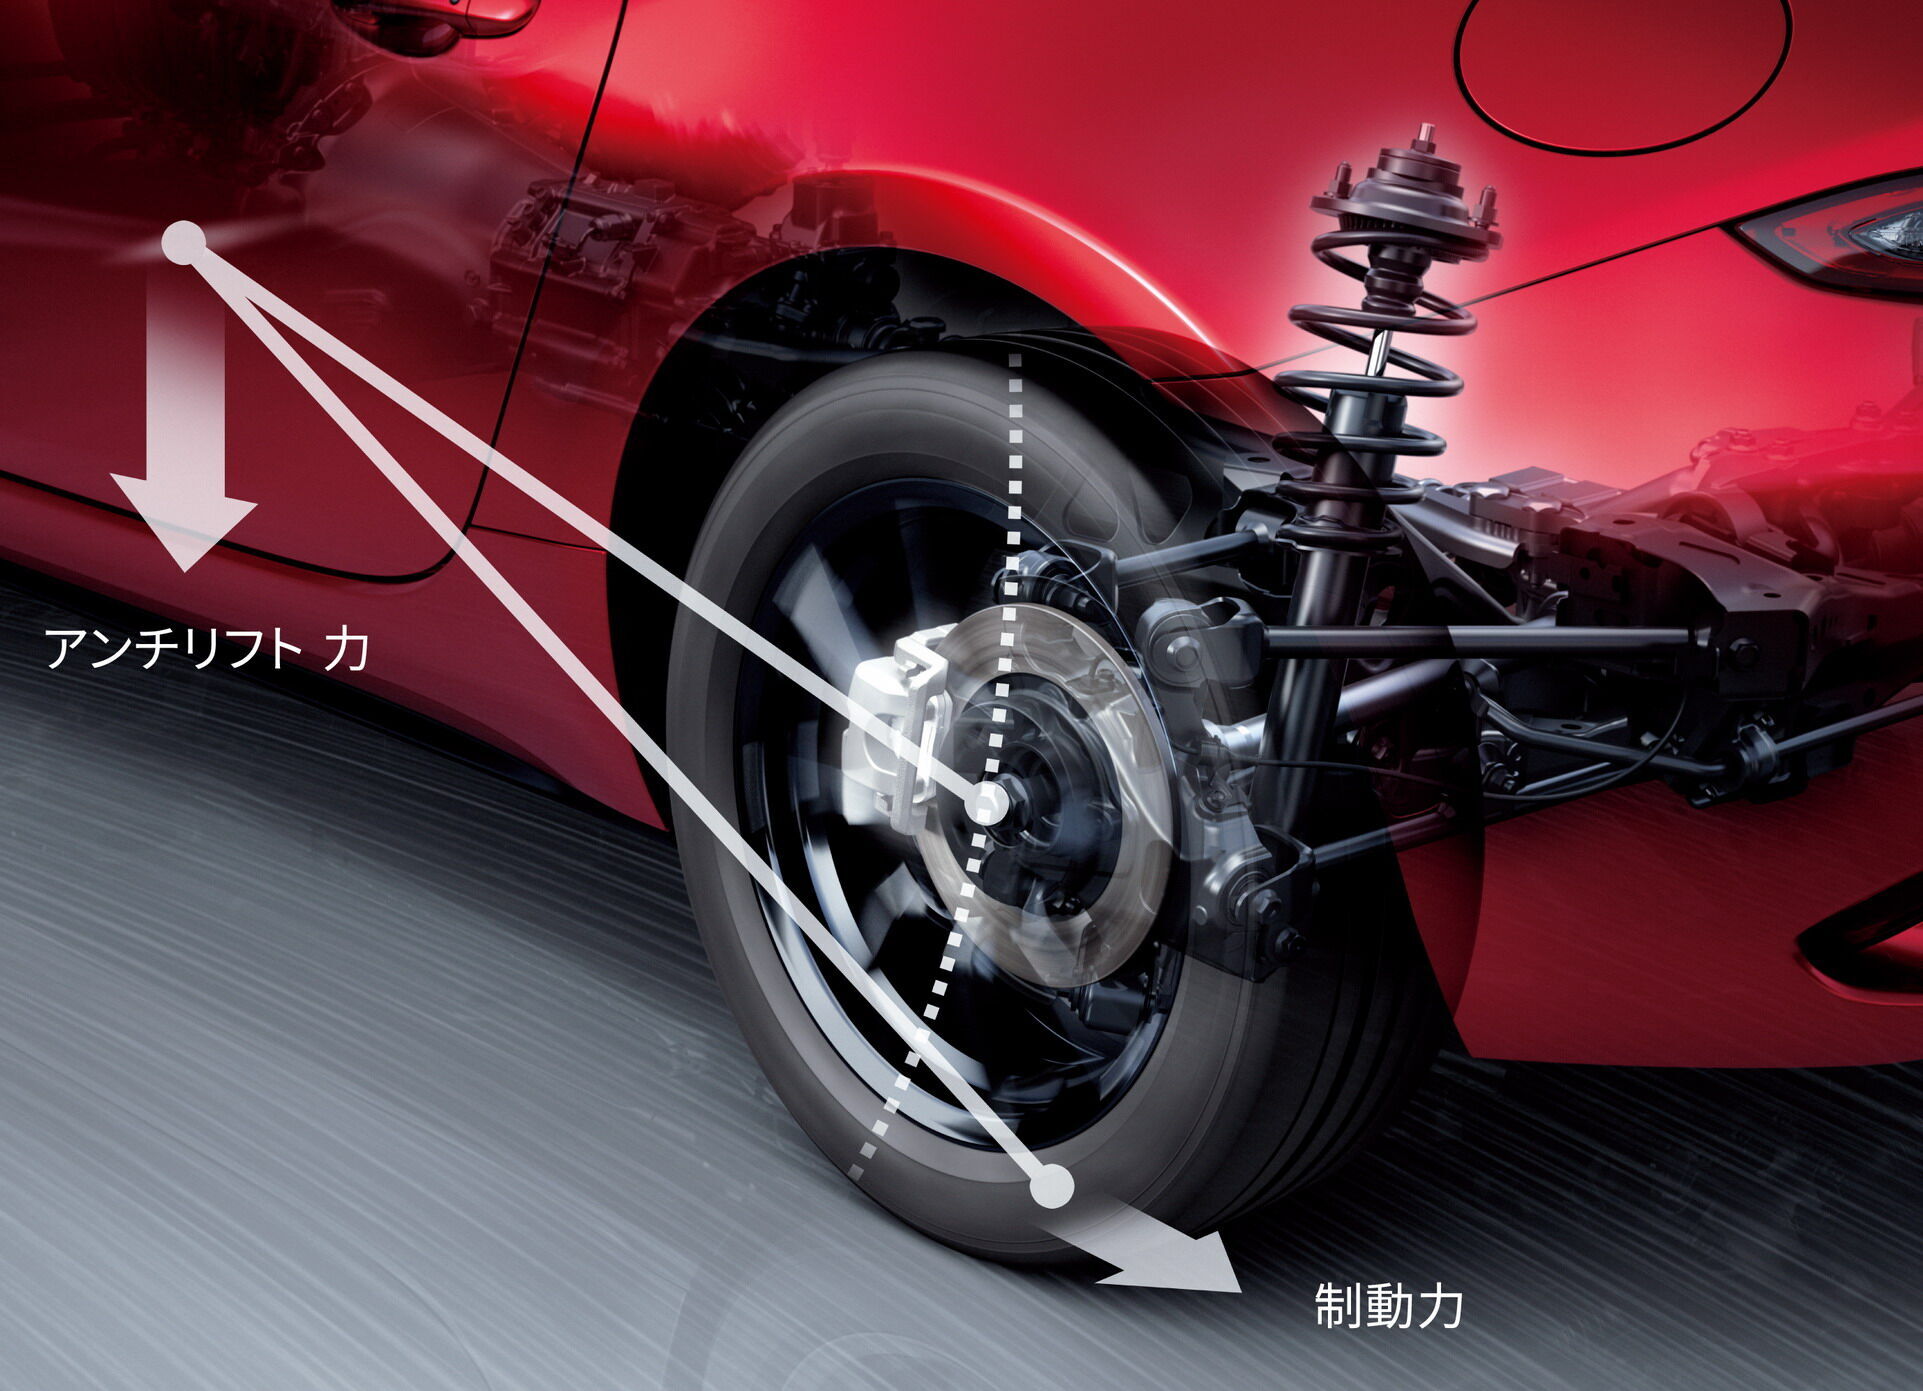 Самым важным обновлением культового японского спорткара стало появление технологии Kinematic Posture Control